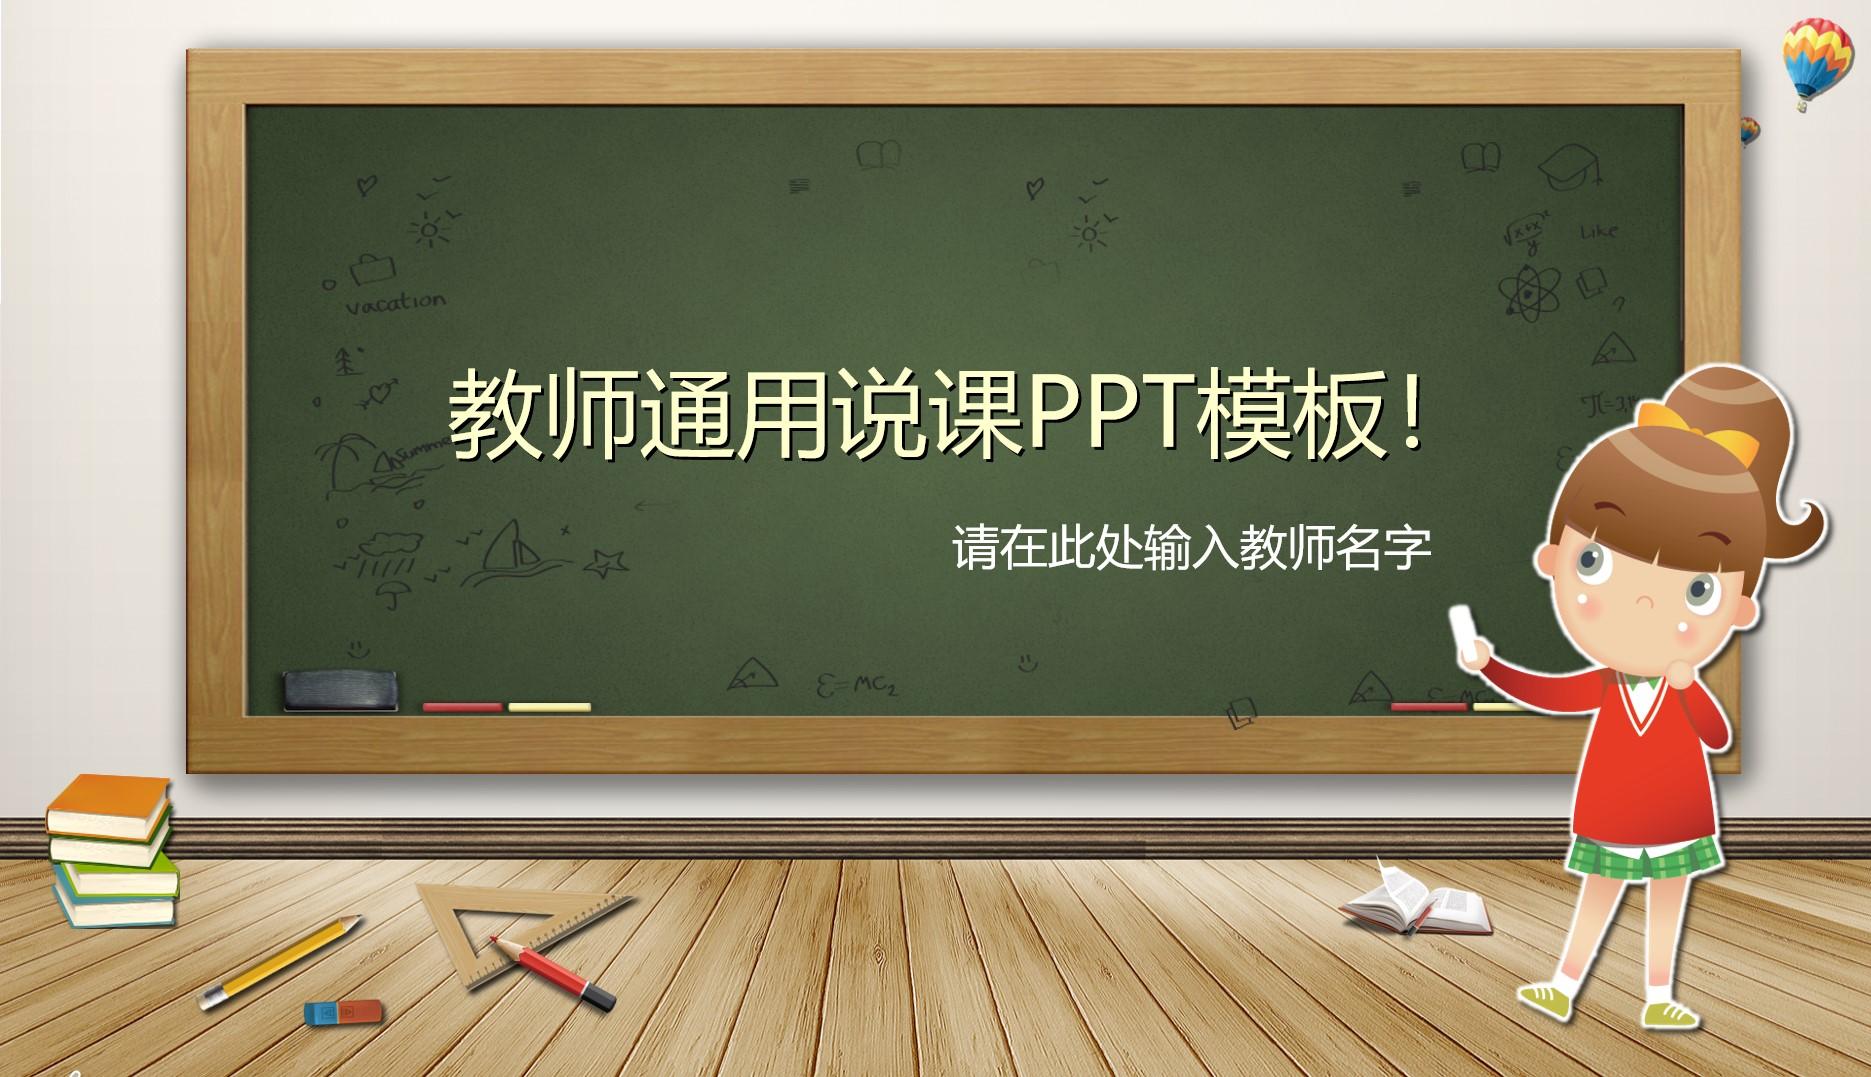 教育教学橙色绿色实景卡通突出教师 通用 ppt 模板 名字云素材PPT模板1672478884050